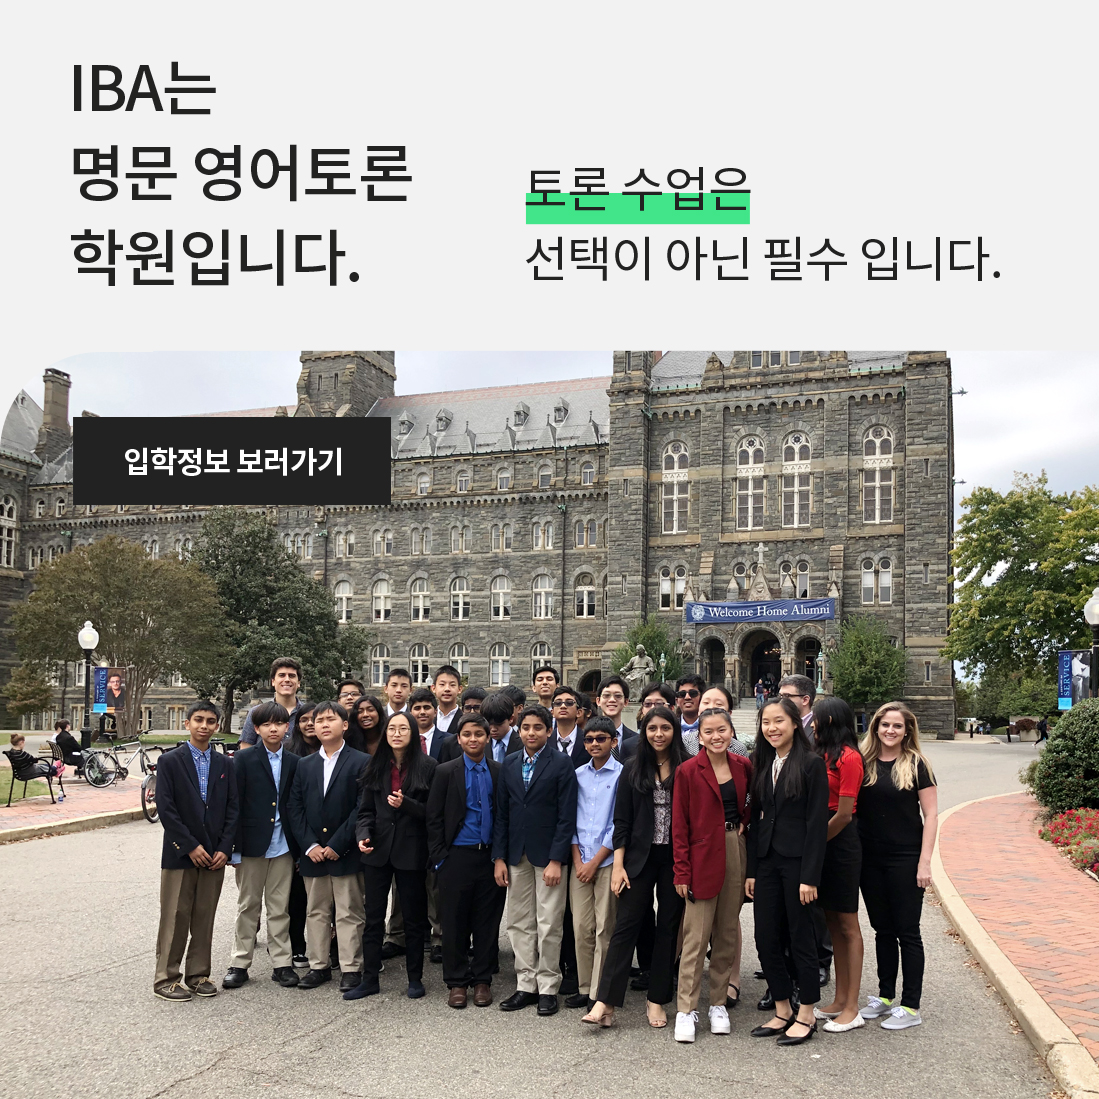 IBA는 영어토론 전문 학원입니다.